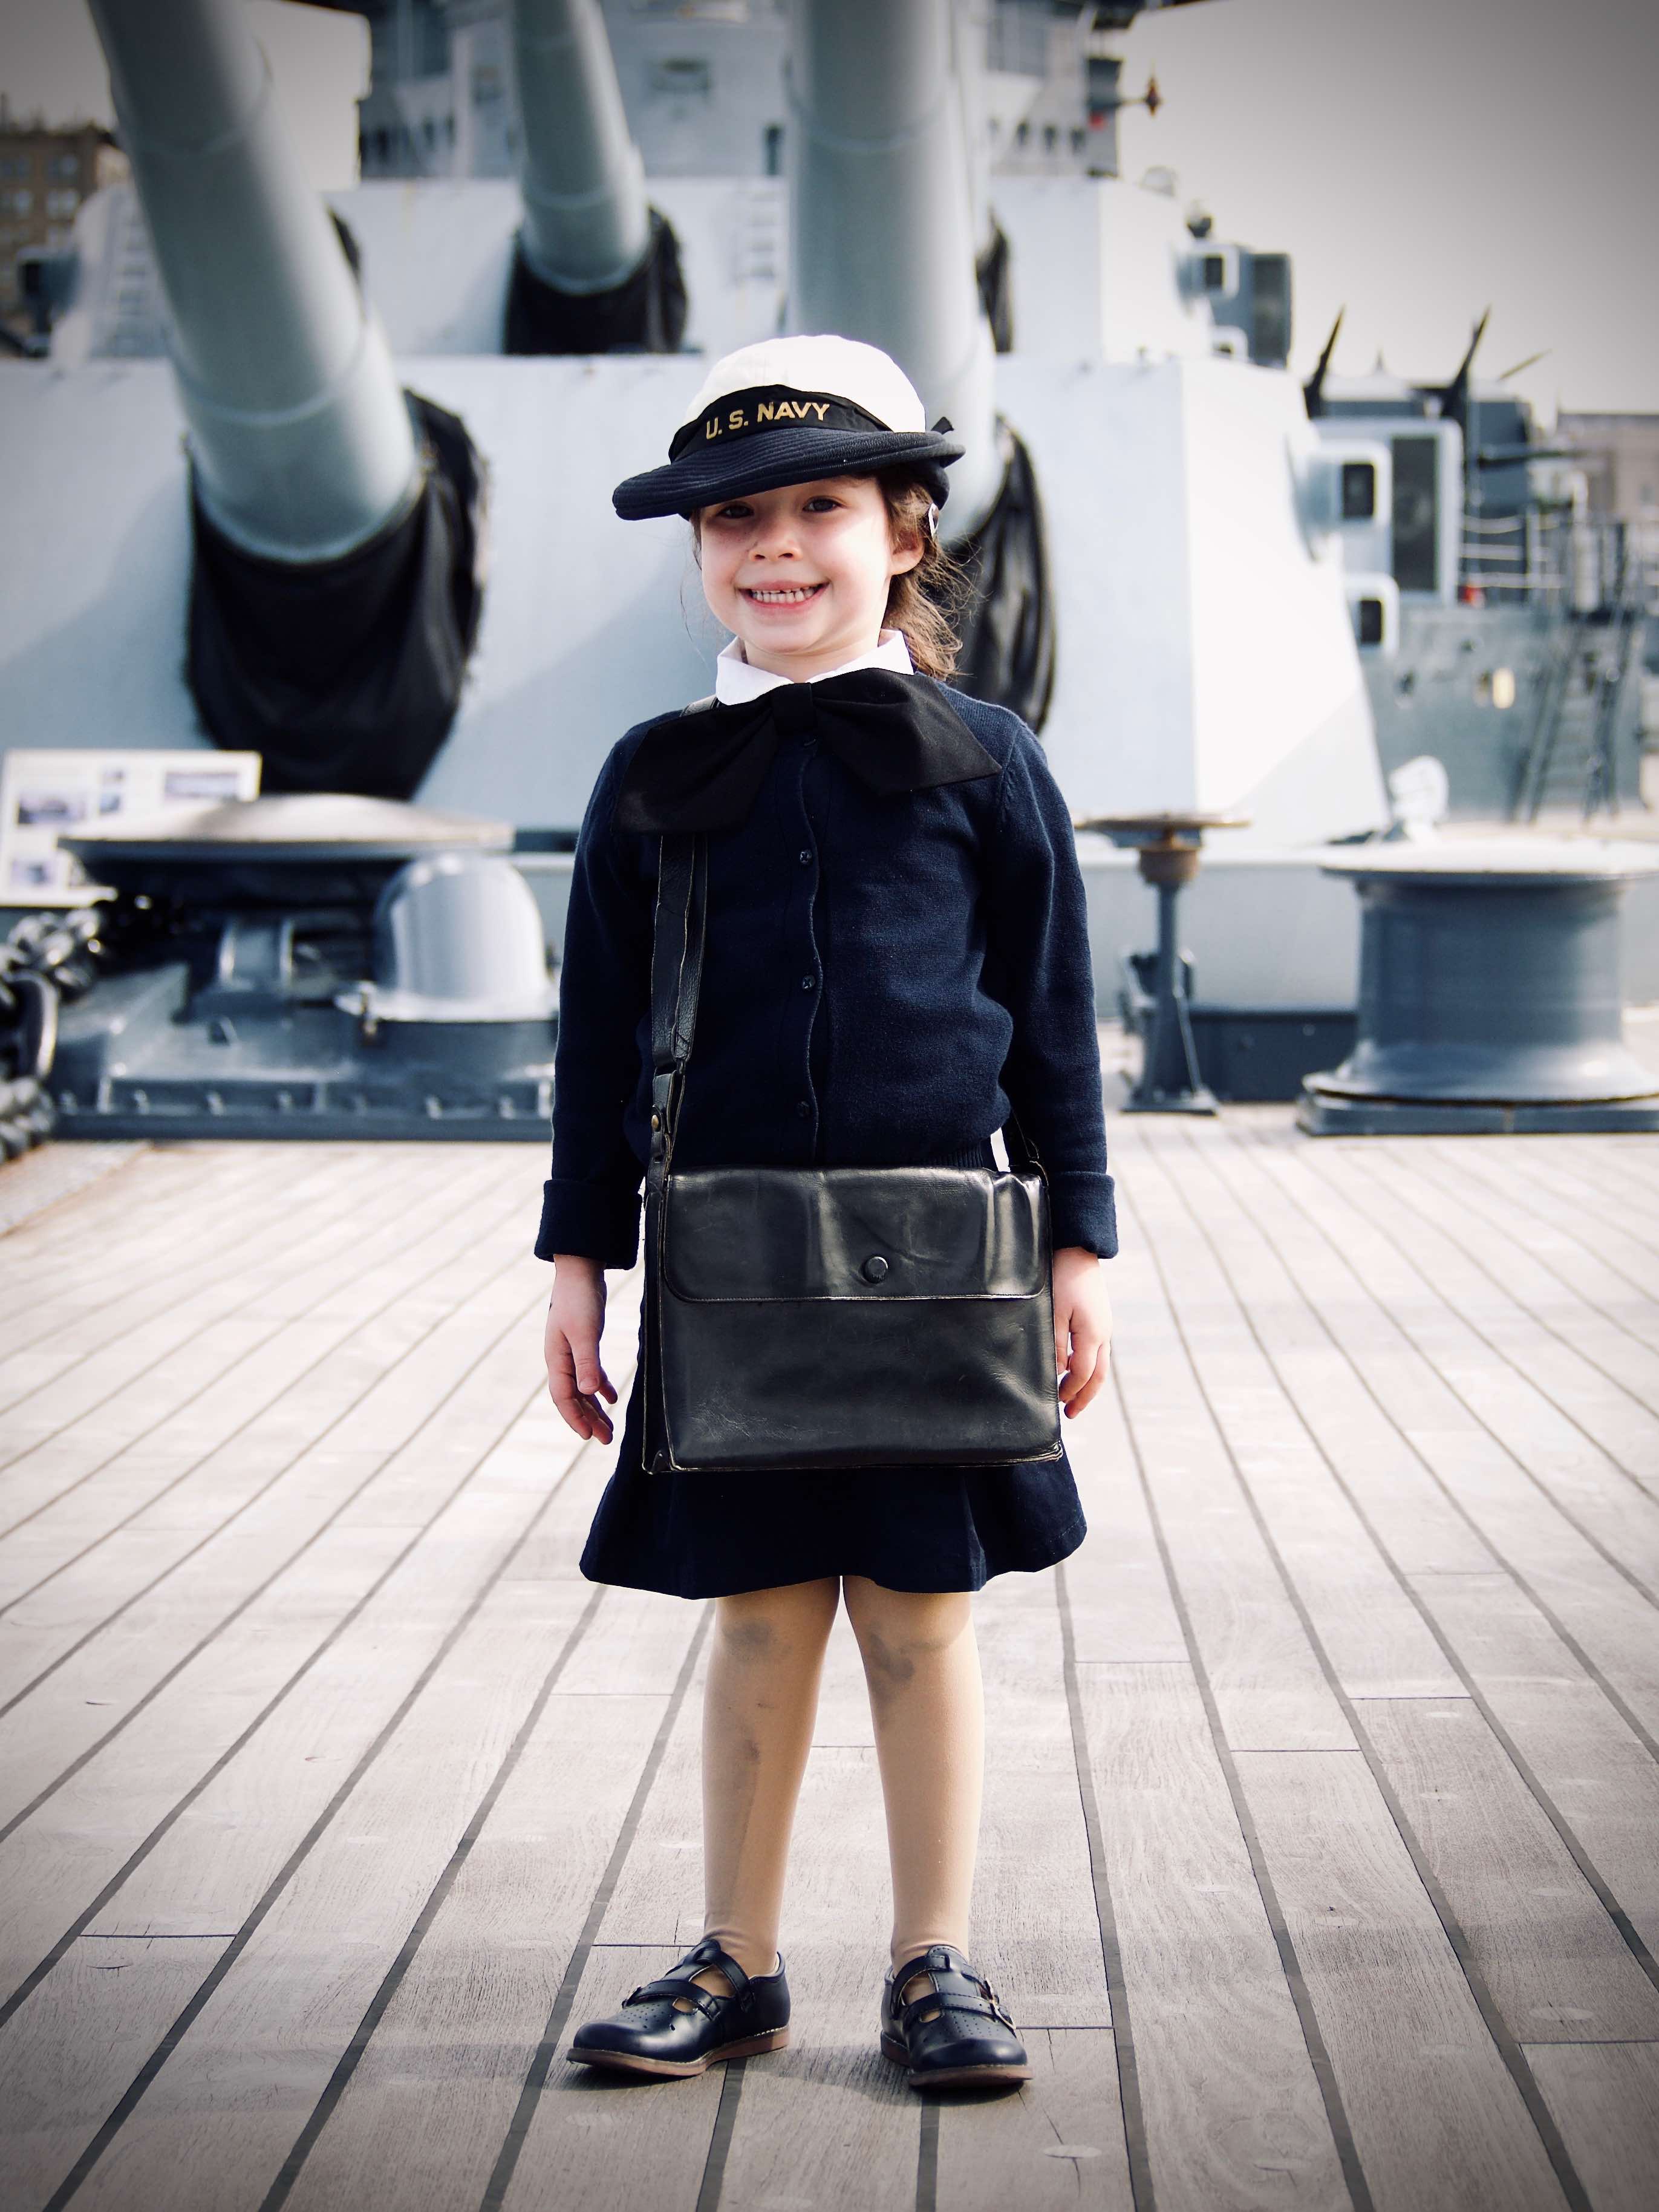 Little girl on battleship